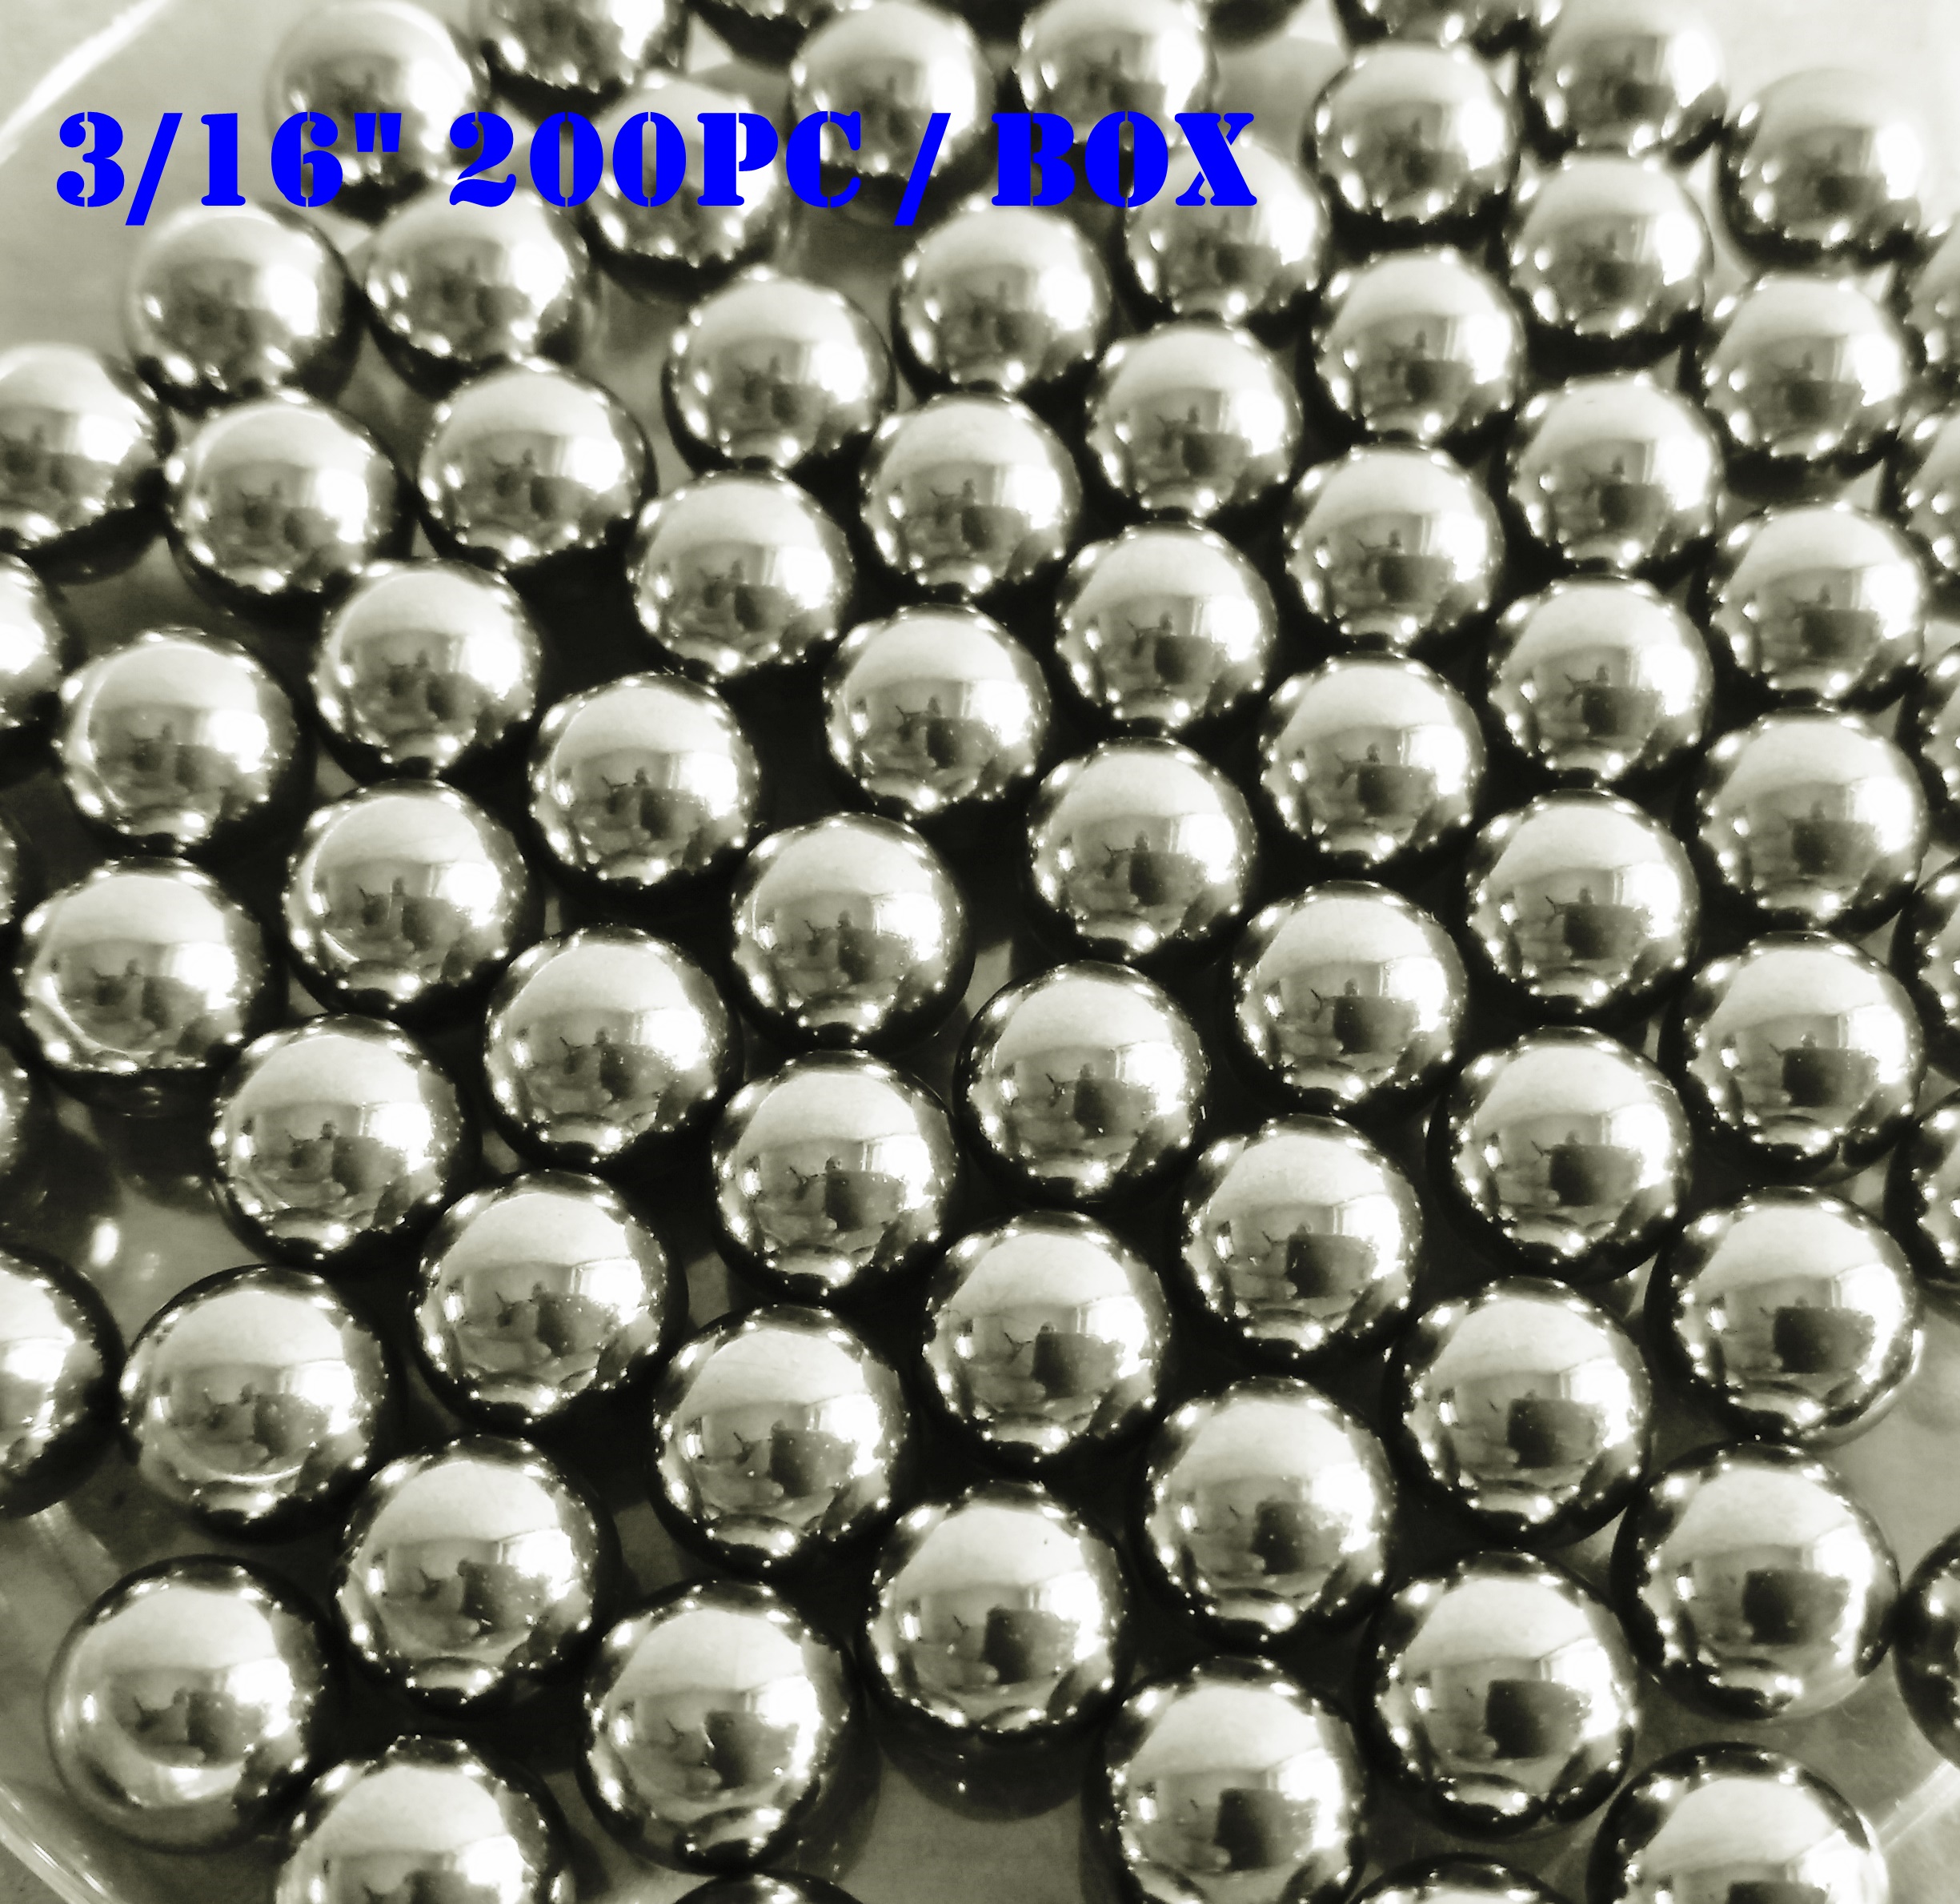 Tangeseiki Bearing Balls 3/16 (Grade 100 ) Pack of 200 Balls